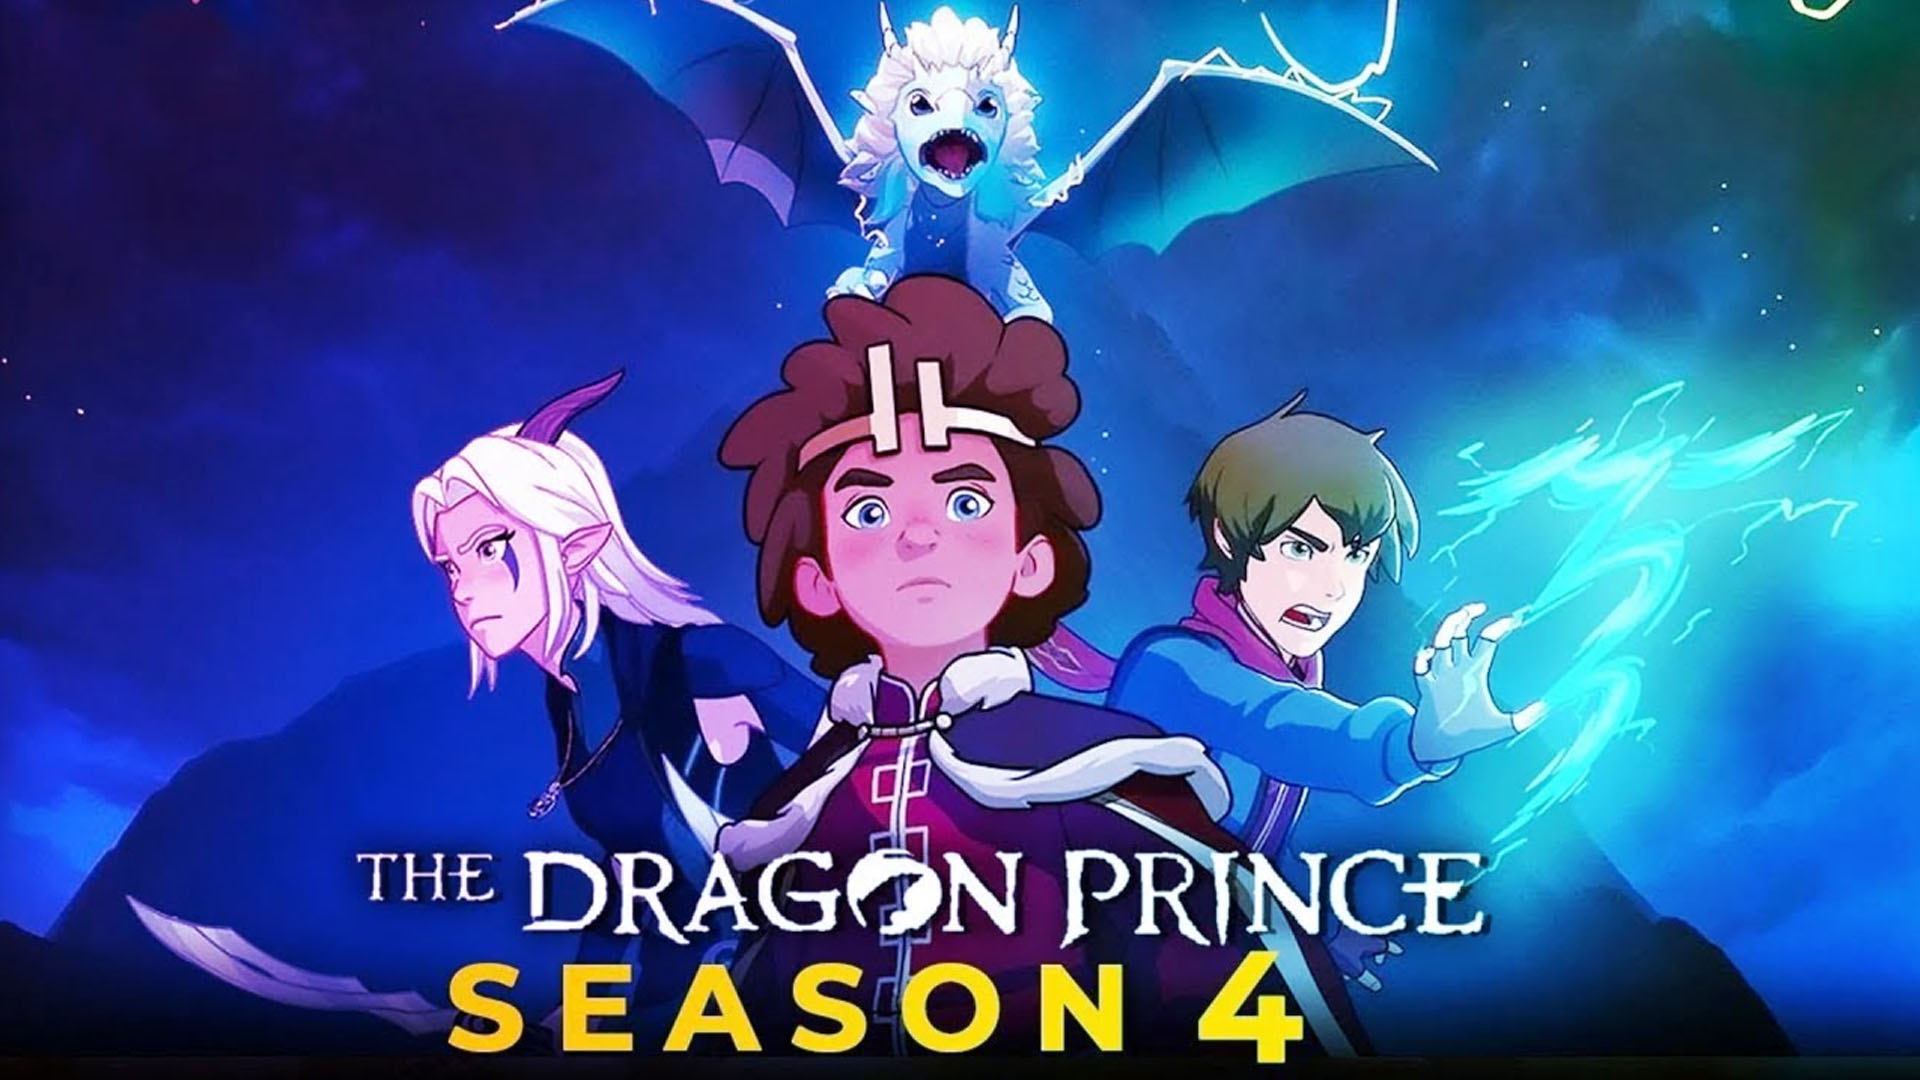 The Dragon Prince Season 4 Wallpapers